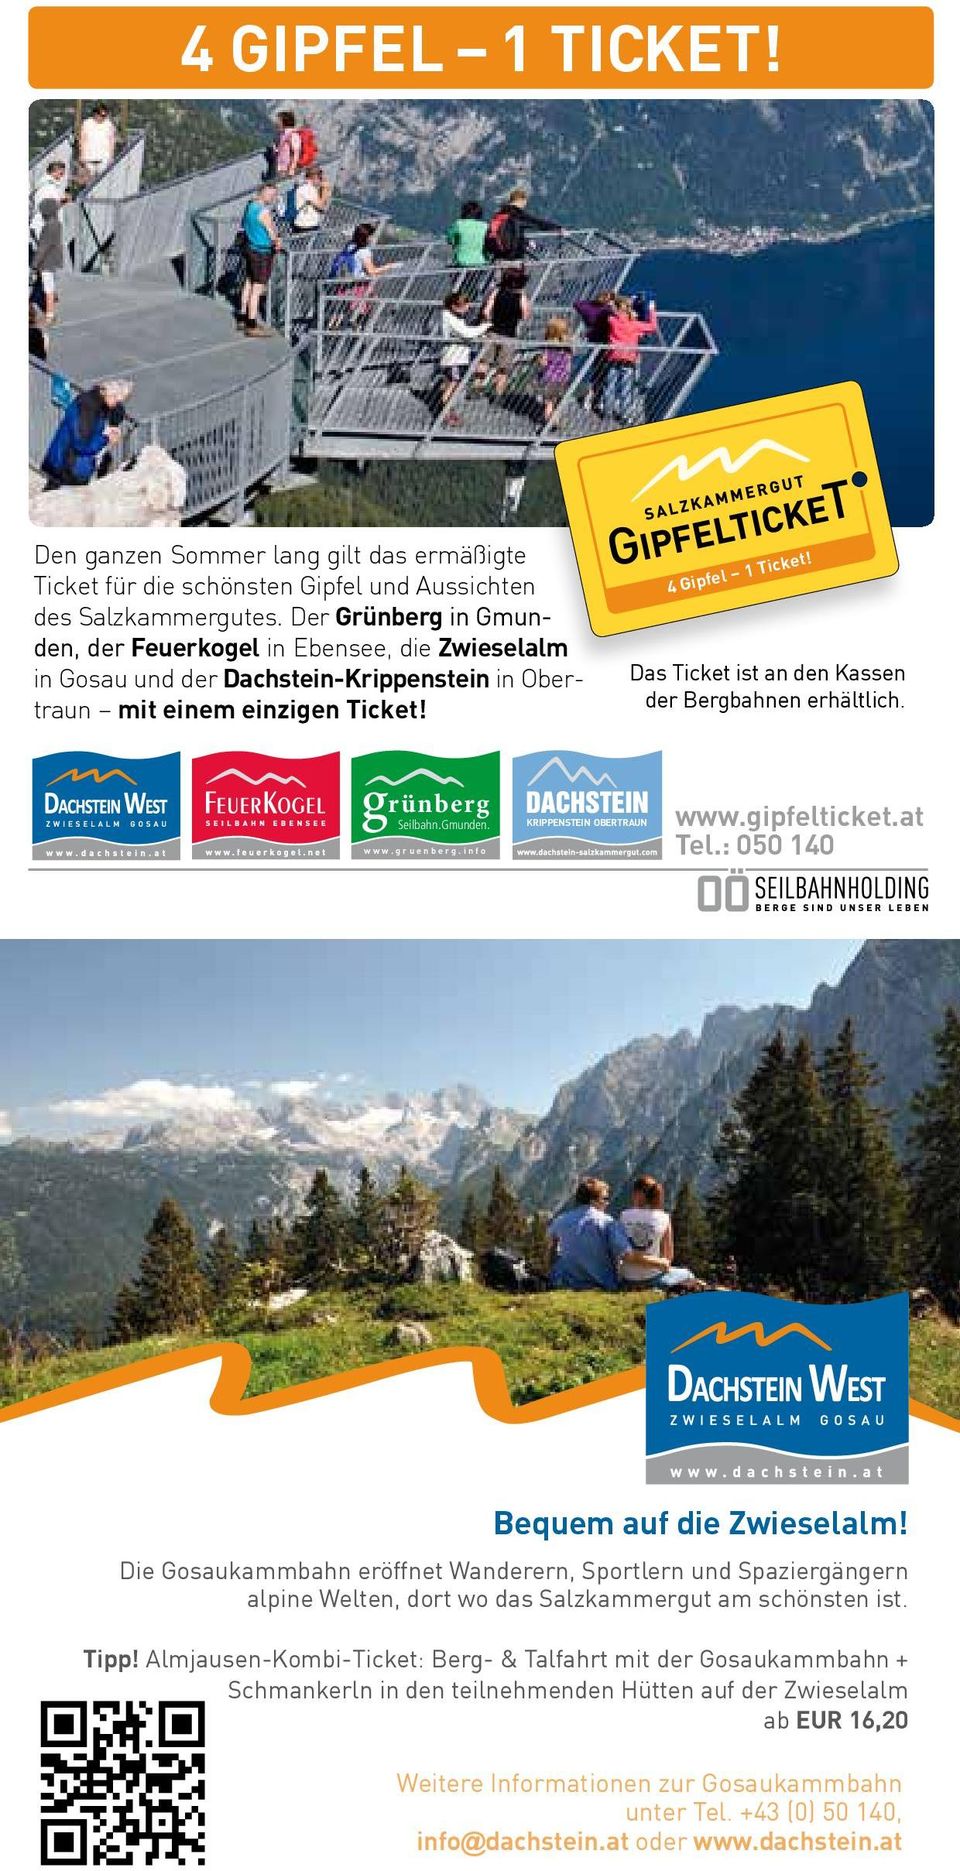 Das Ticket ist an den Kassen der Bergbahnen erhältlich. grünberg Seilbahn.Gmunden. www.gruenberg.info krippenstein obertraun www.gipfelticket.at tel.: 050 140 bequem auf die Zwieselalm!